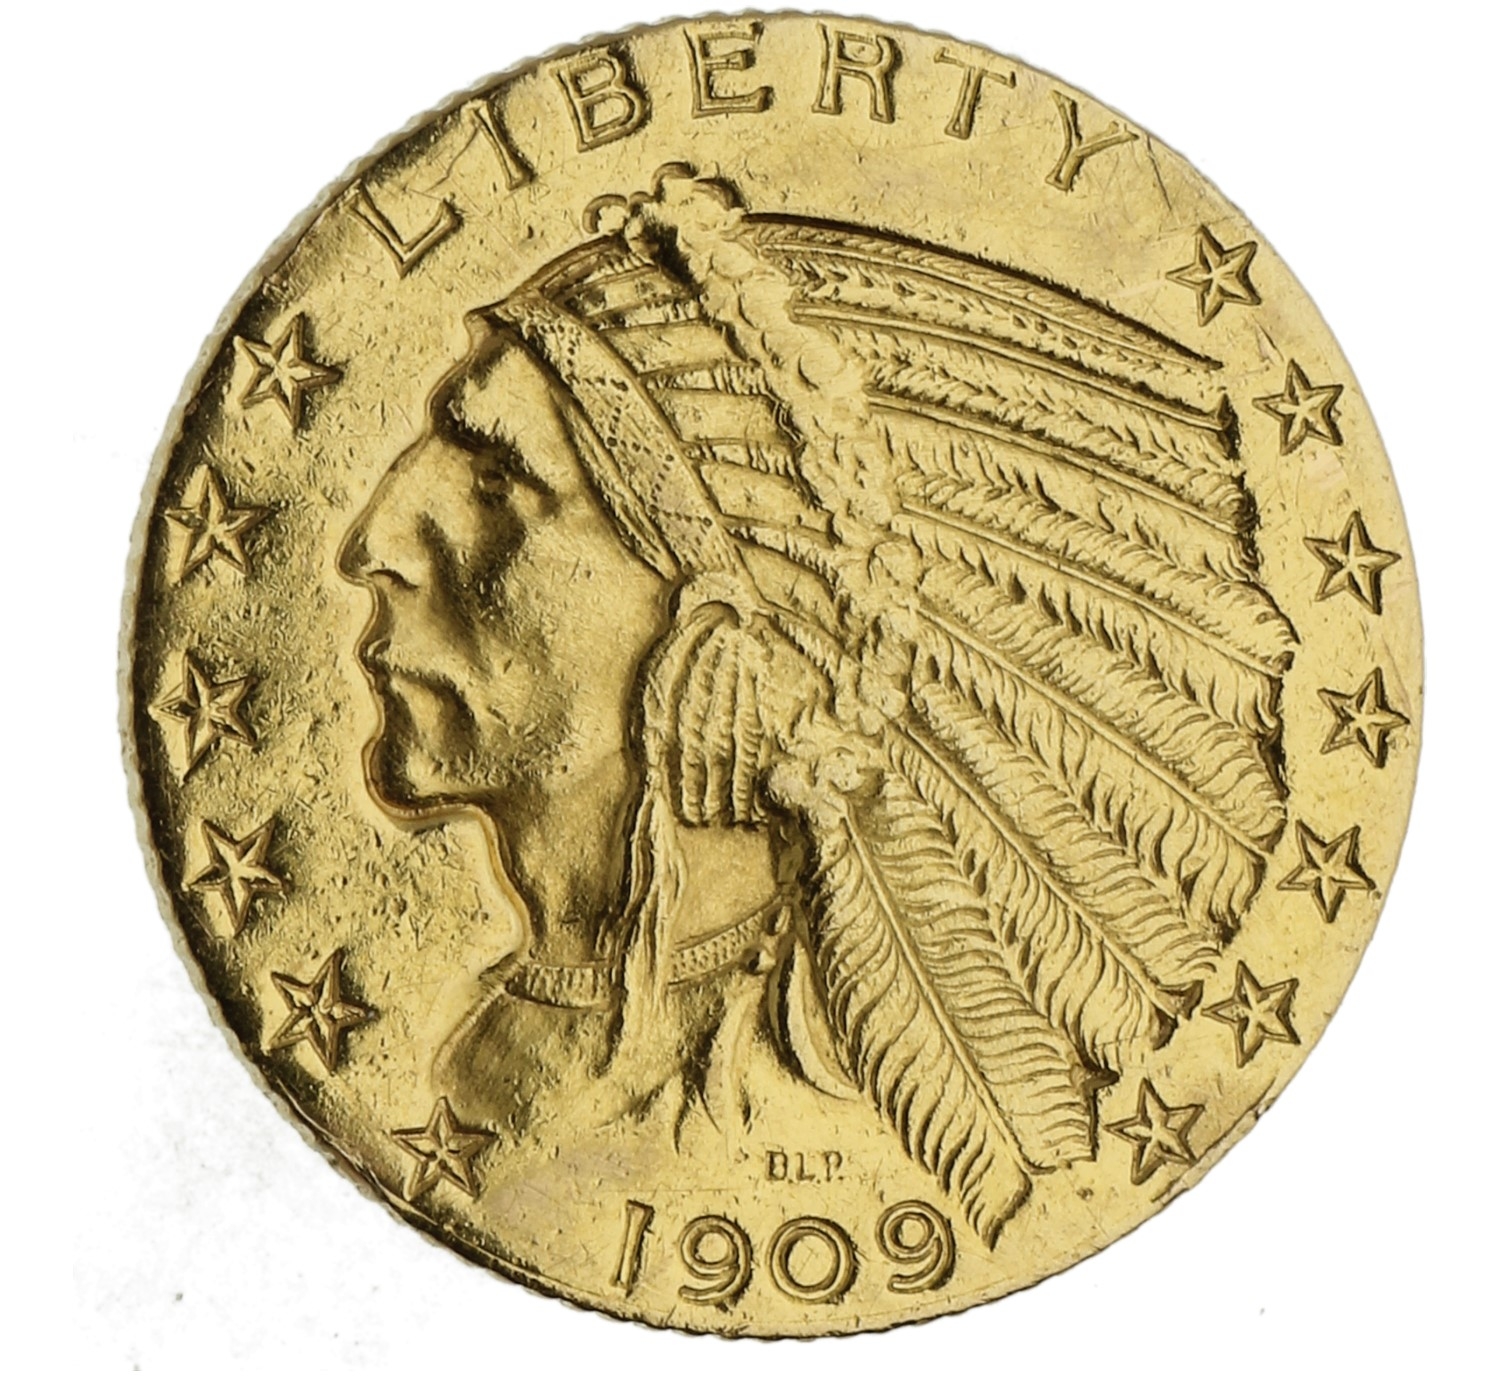 5 Dollars - USA - 1909 D